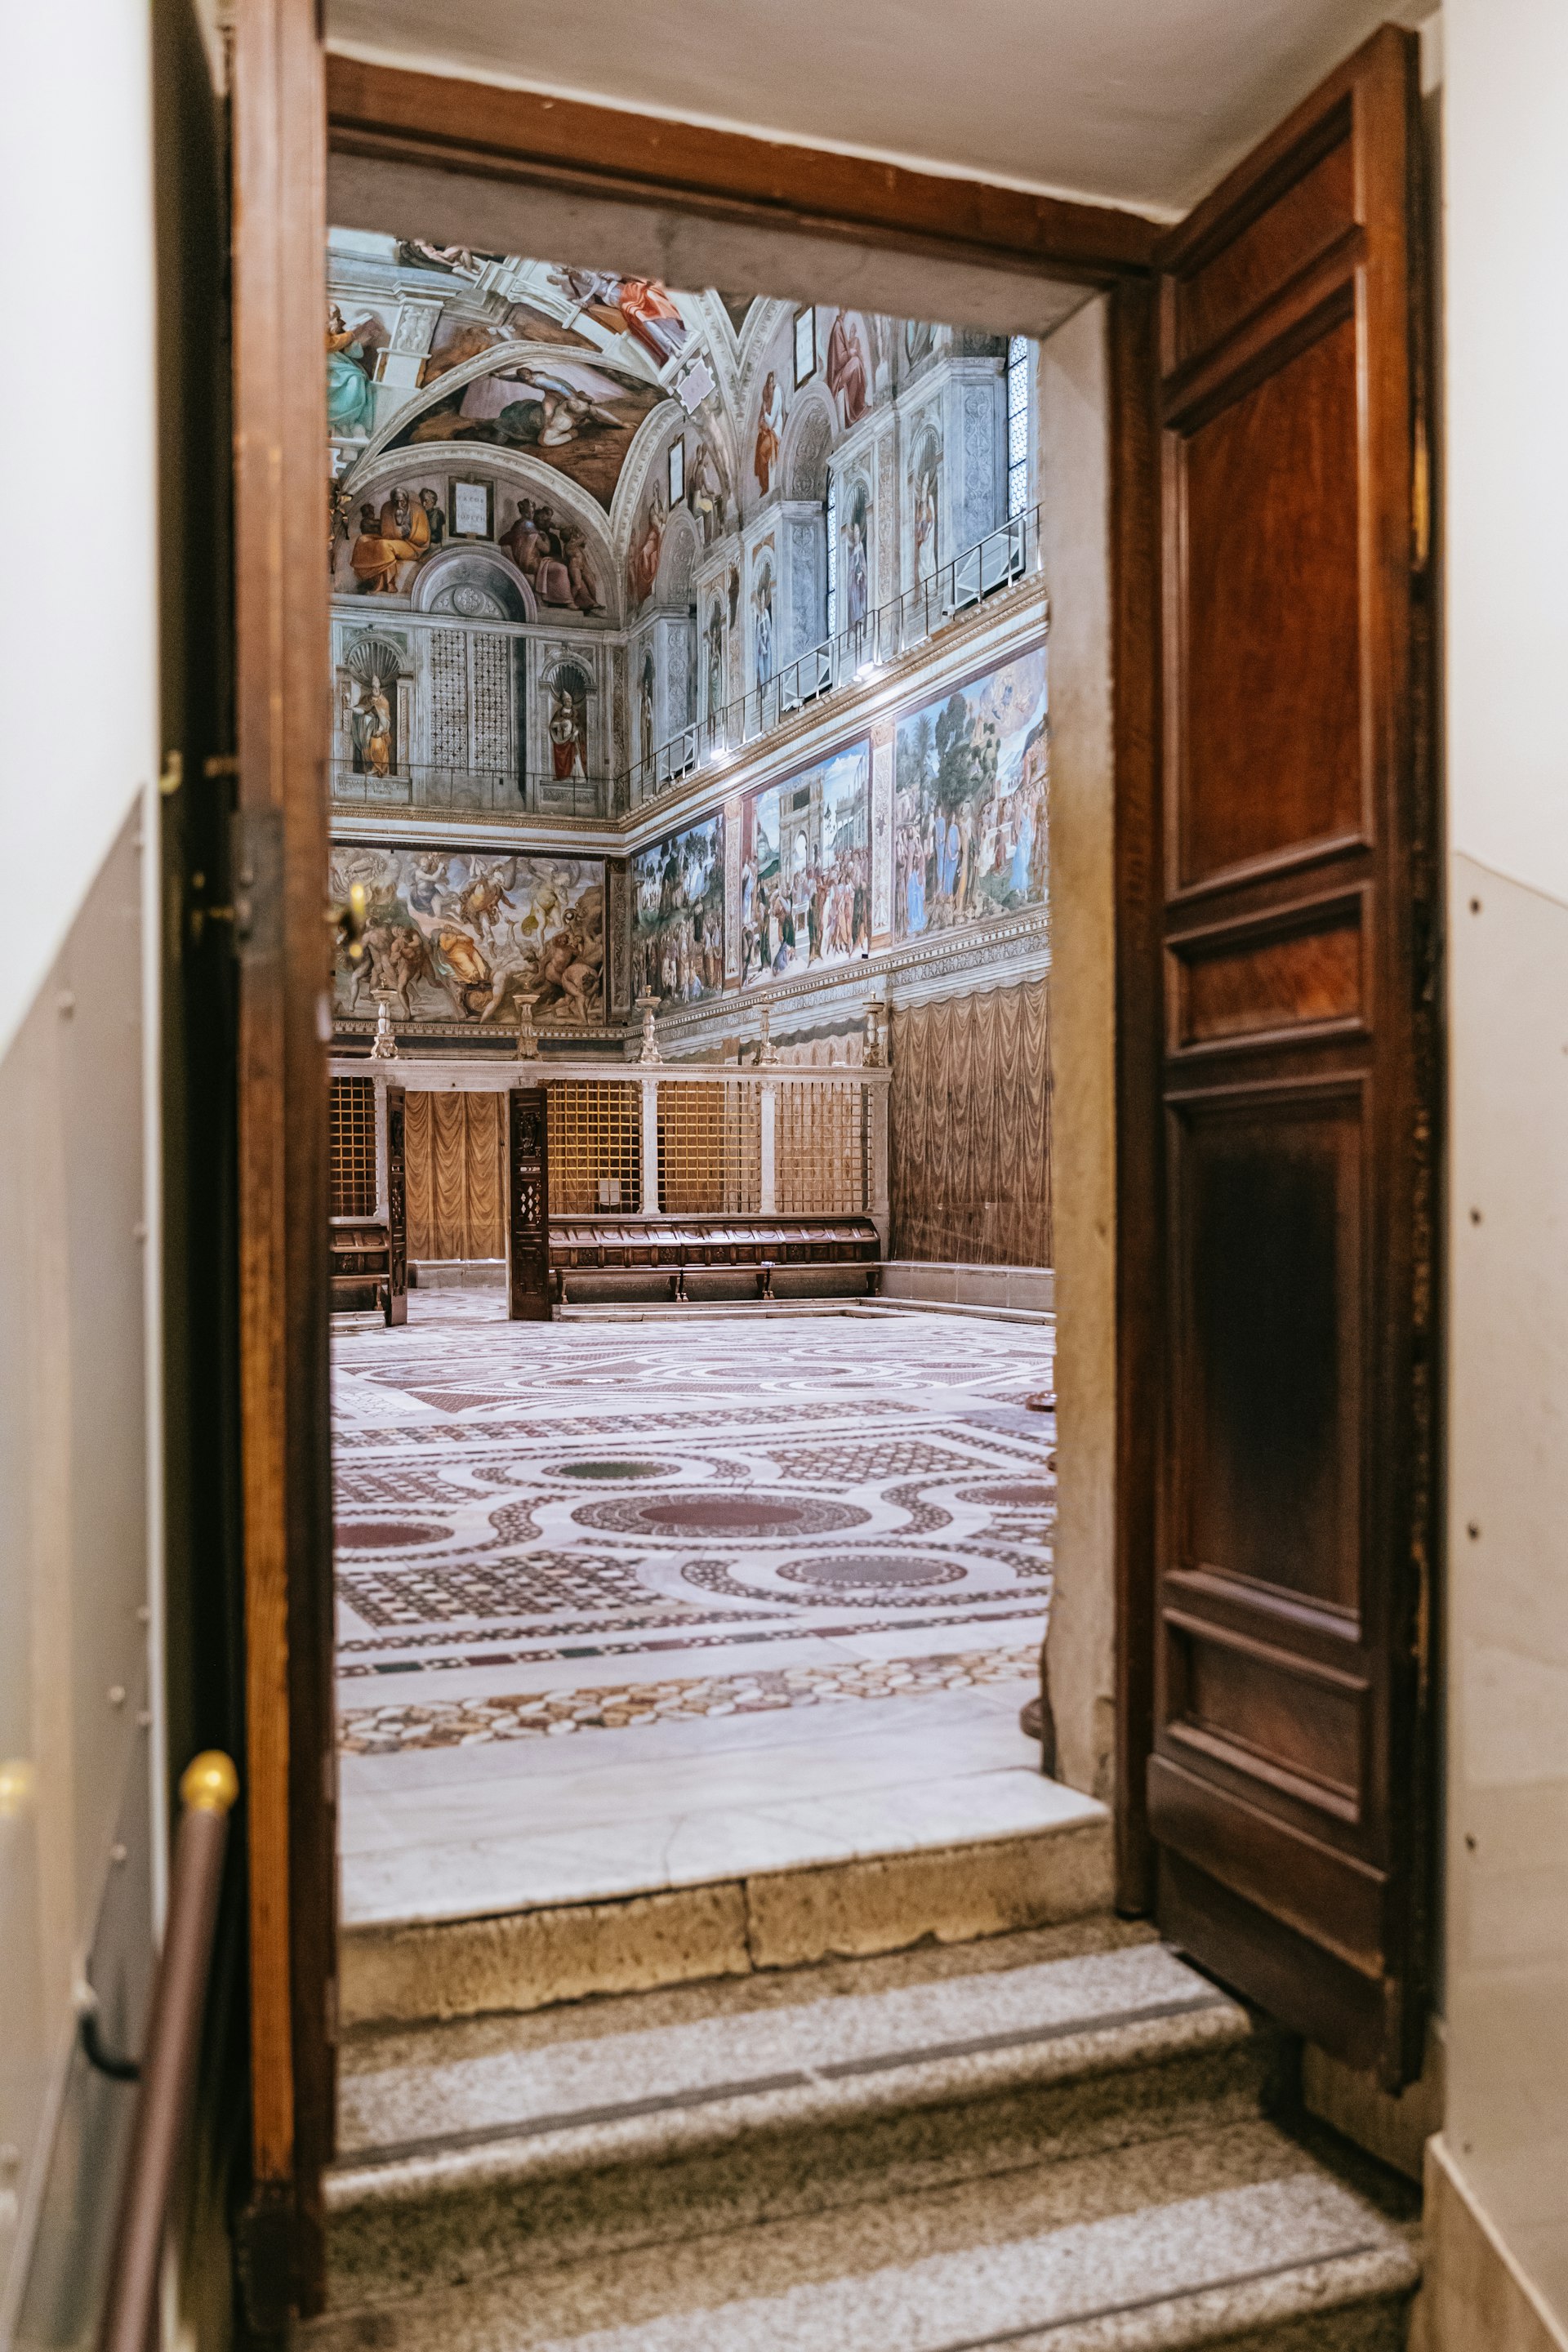 The door to the Sistine Chapel